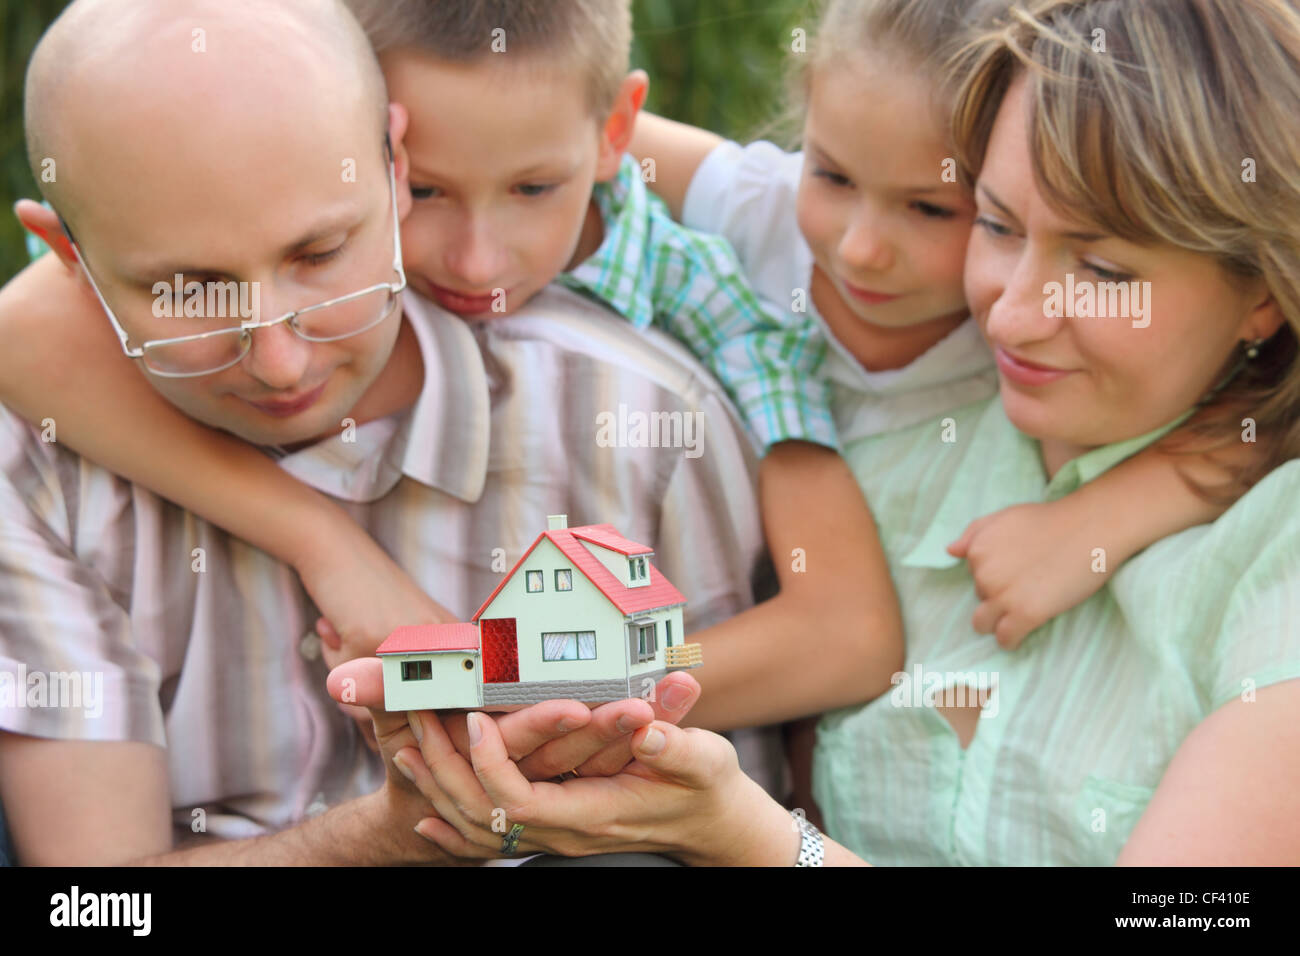 Famiglia con due bambini è mantenere wendy house nelle loro mani e lo sta guardando. focus su wendy house. facce in fuori fuoco. Foto Stock